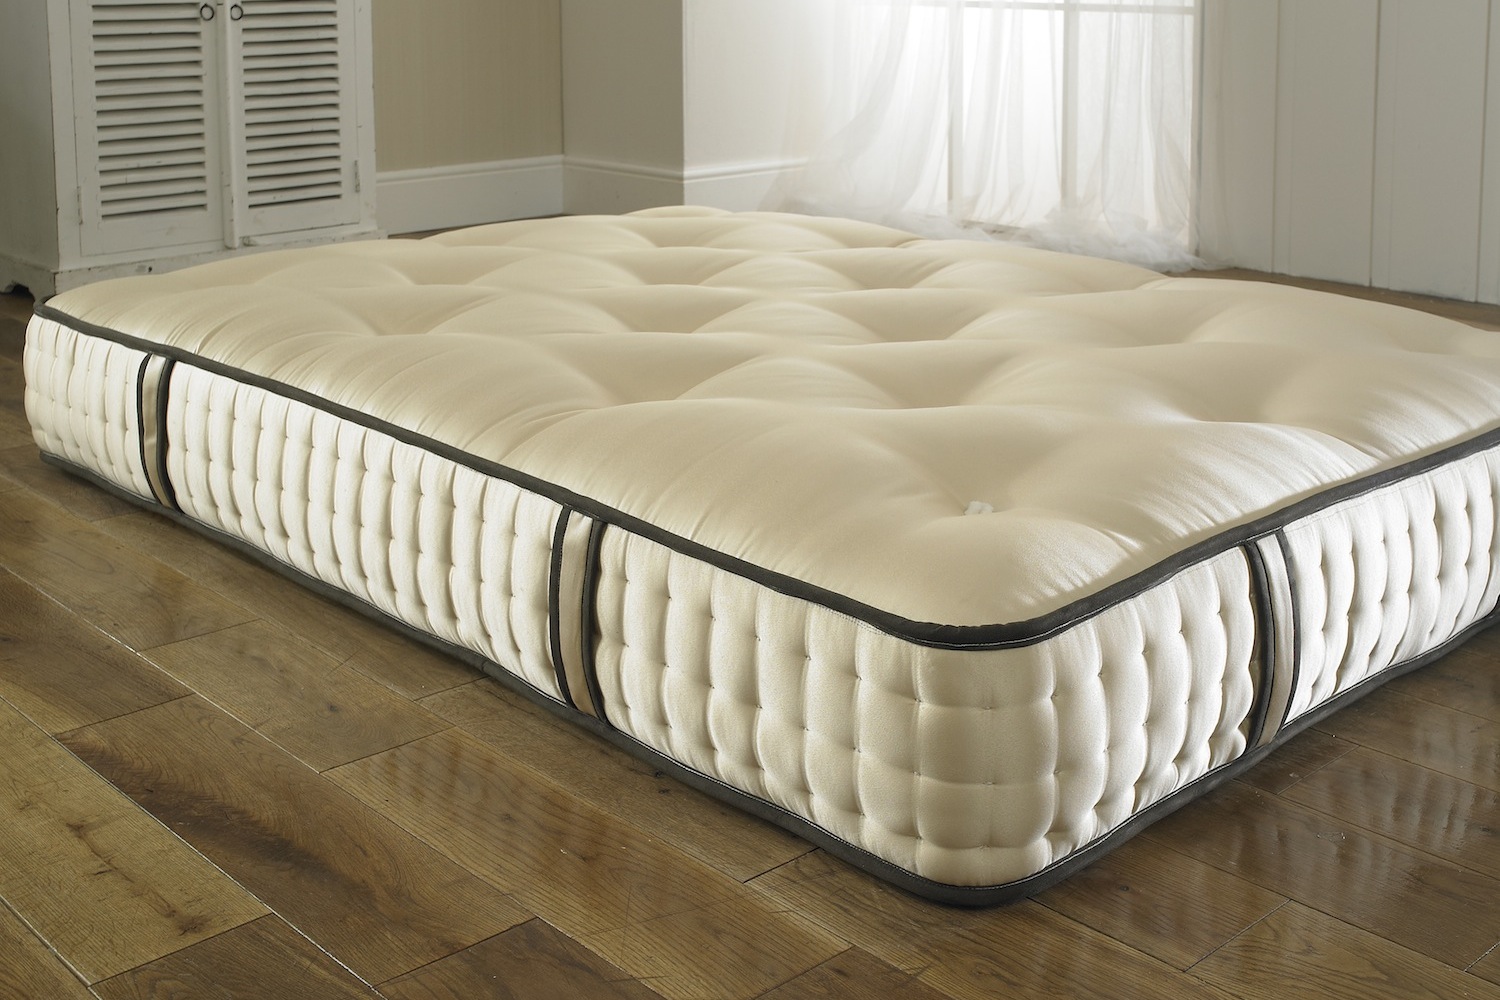 sultan's linens mattress cover